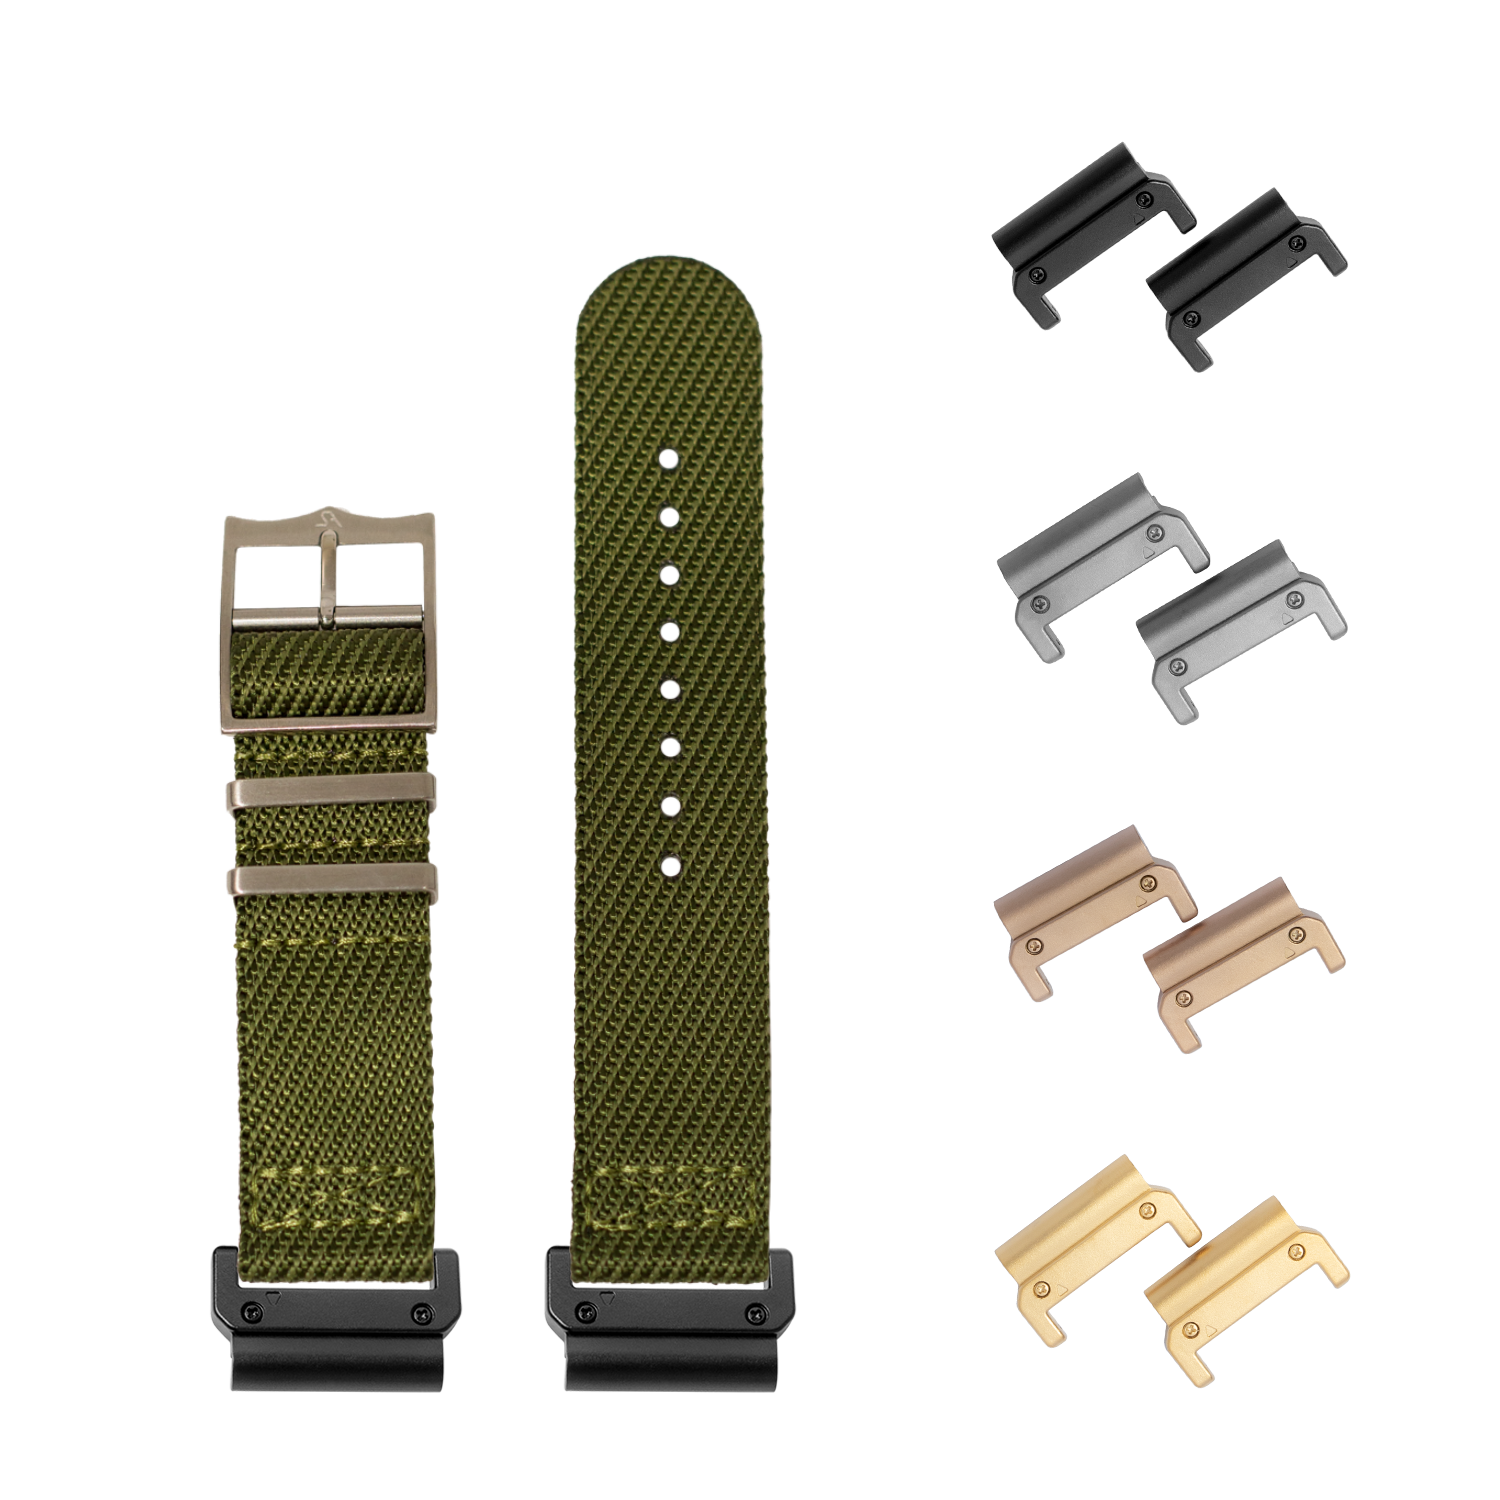 [QuickFit] Cross Militex - Army Green 26mm